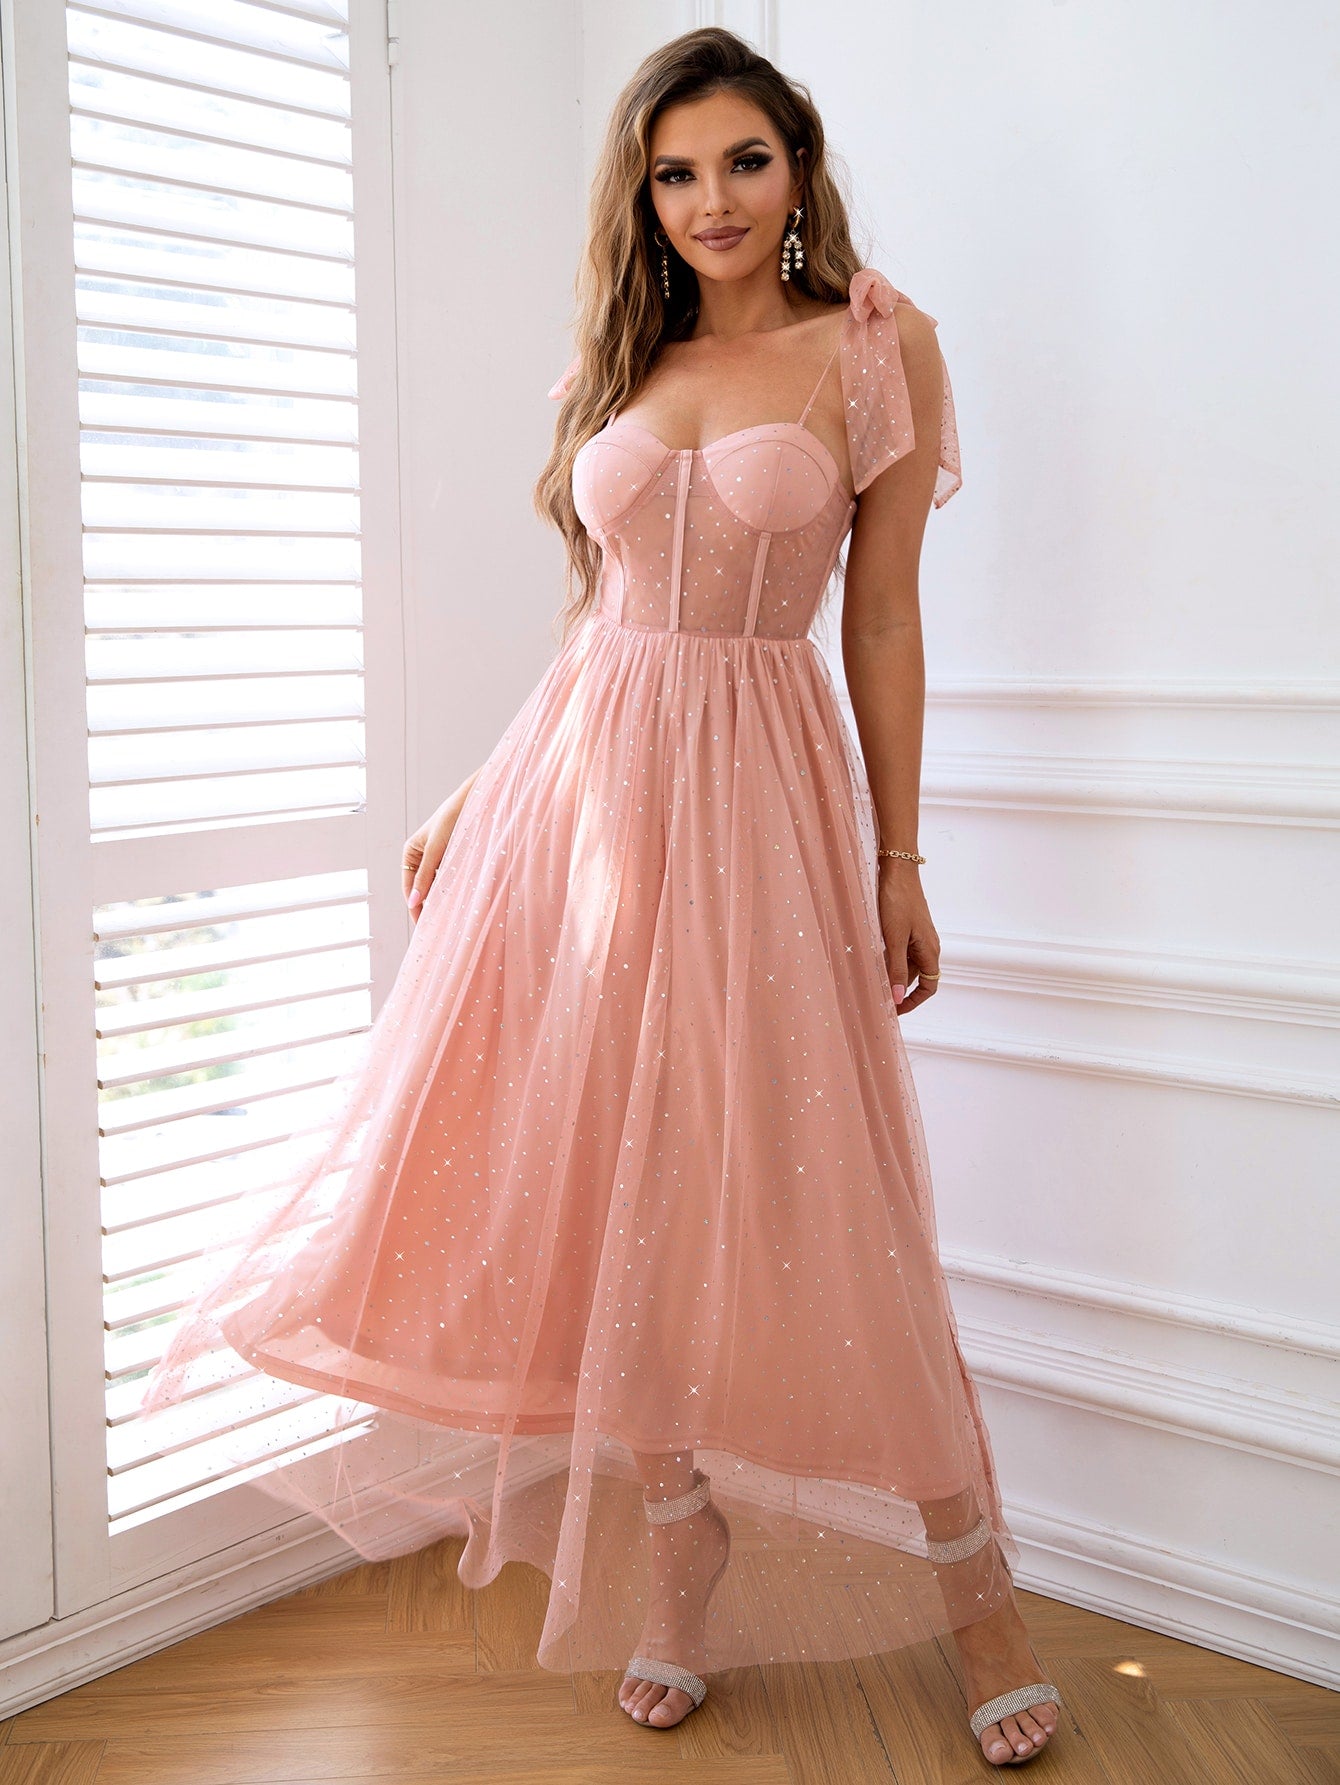 Blushing Rose Dress